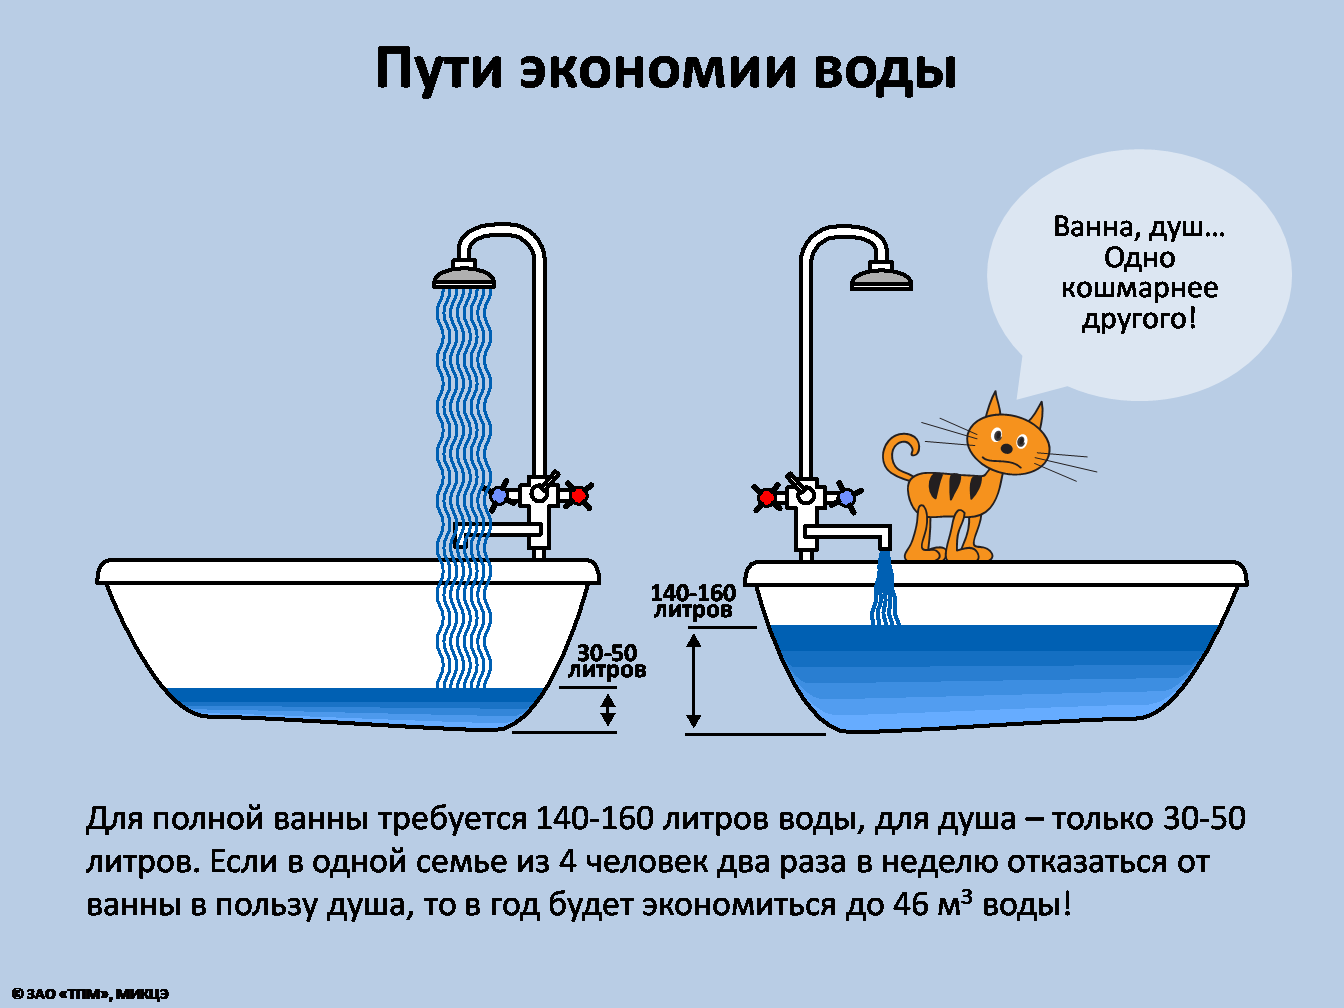 Количество воды отданное горячей водой. Экономия воды. Экономия воды в быту. Экономия потребления воды. Пути экономии воды.